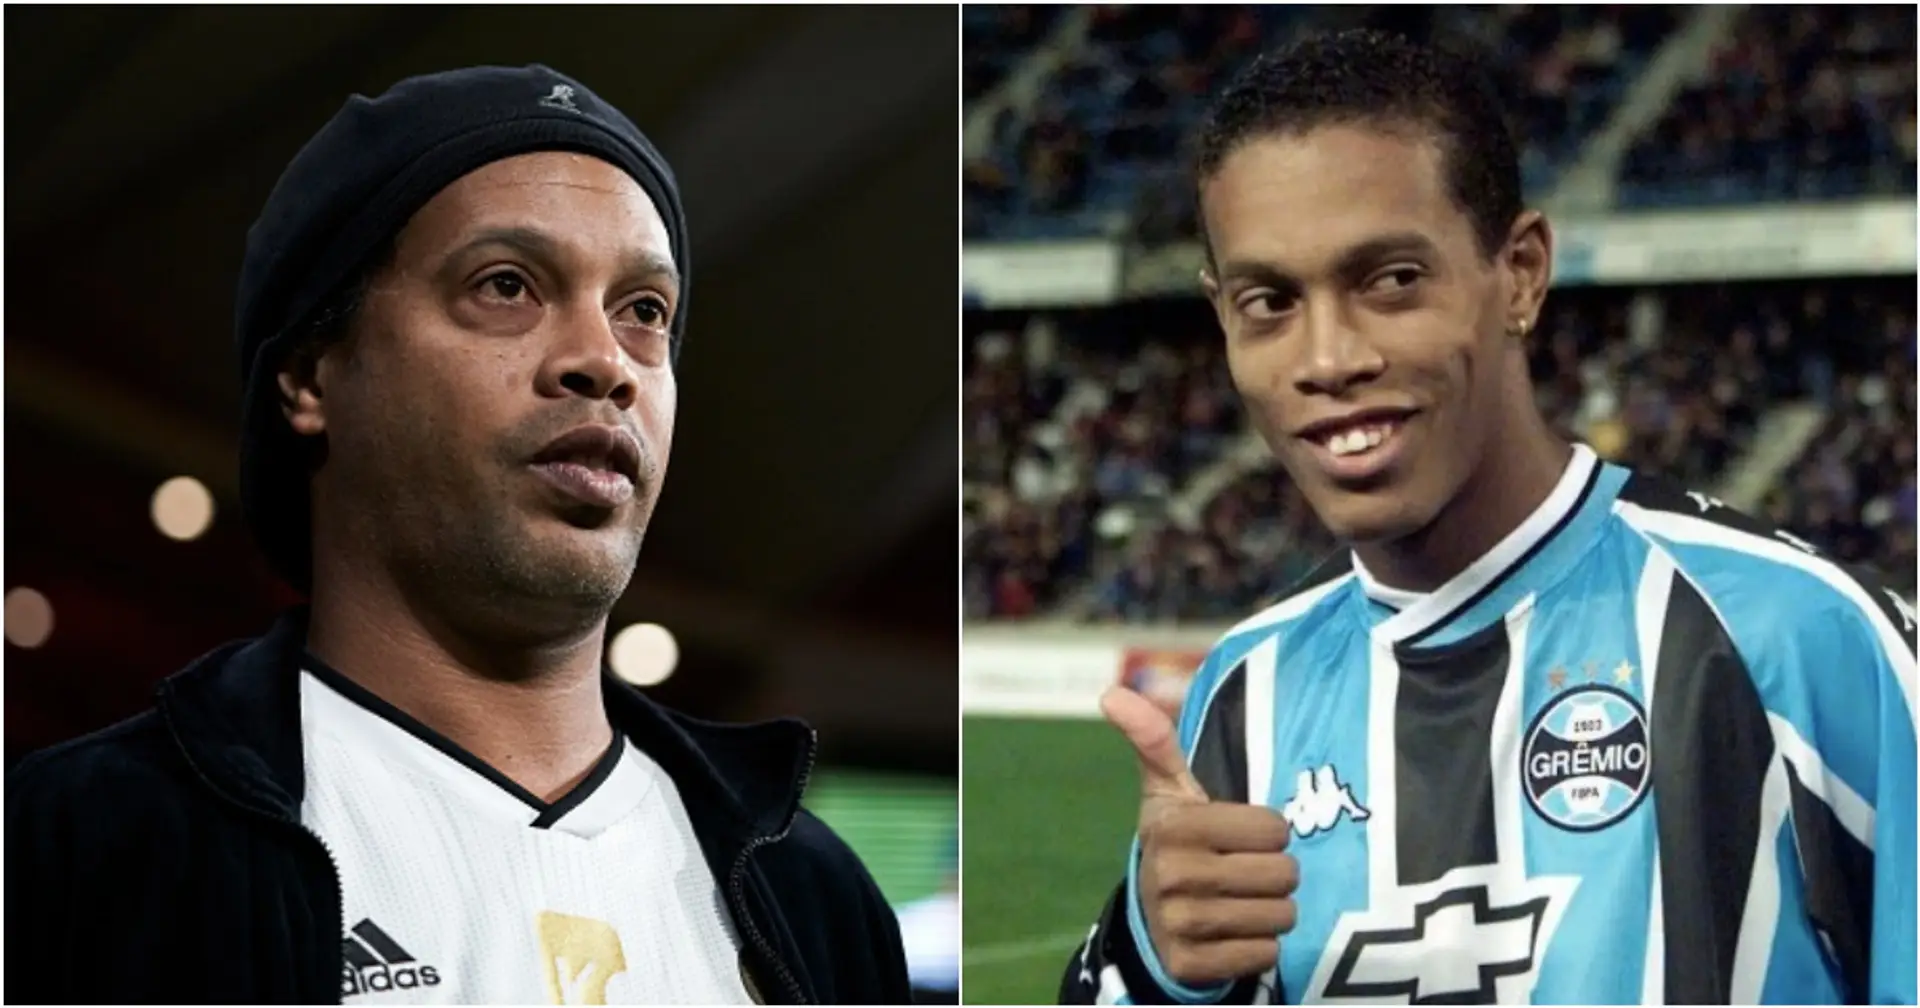 ¿Por qué los fanáticos del Gremio odian absolutamente a Ronaldinho?